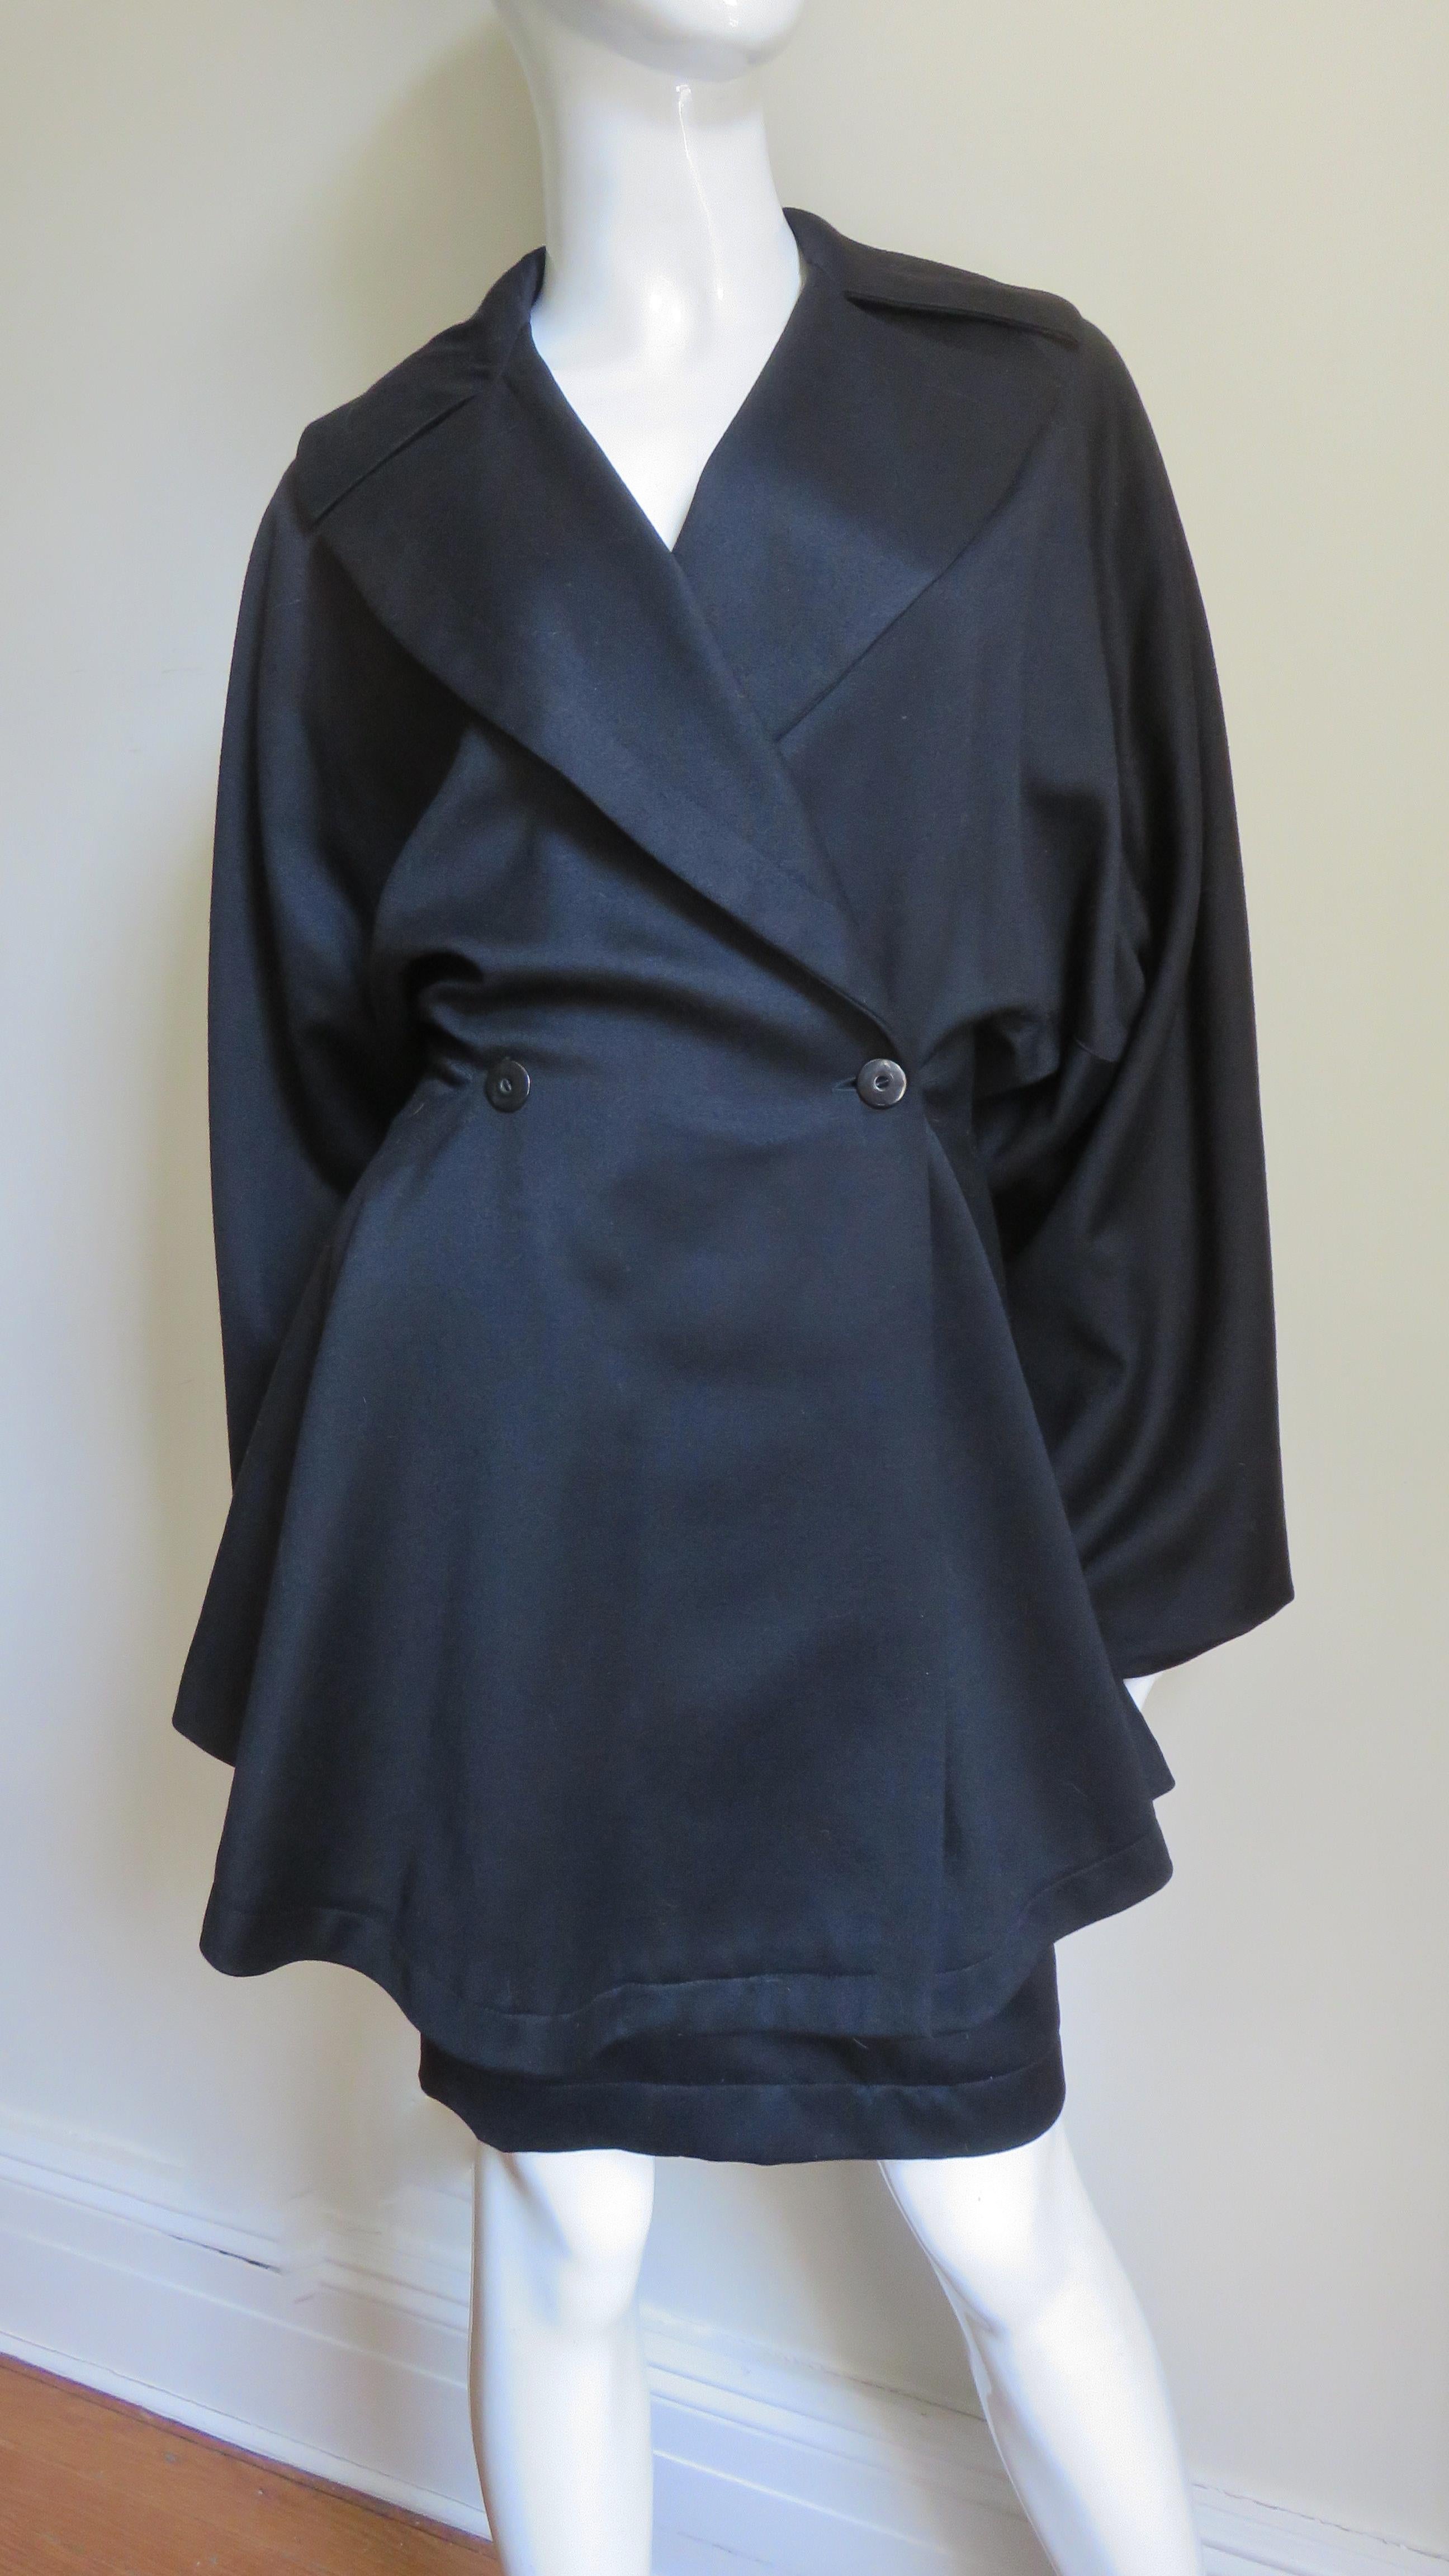 Une étonnante combinaison 3 pièces en laine noire d'Azzedine Alaia, composée d'une jupe, d'un pantalon et d'une veste, telle qu'elle est présentée dans le catalogue de la marque  Musée de la mode SCAD à Atlanta.  La veste spectaculaire qui s'enroule